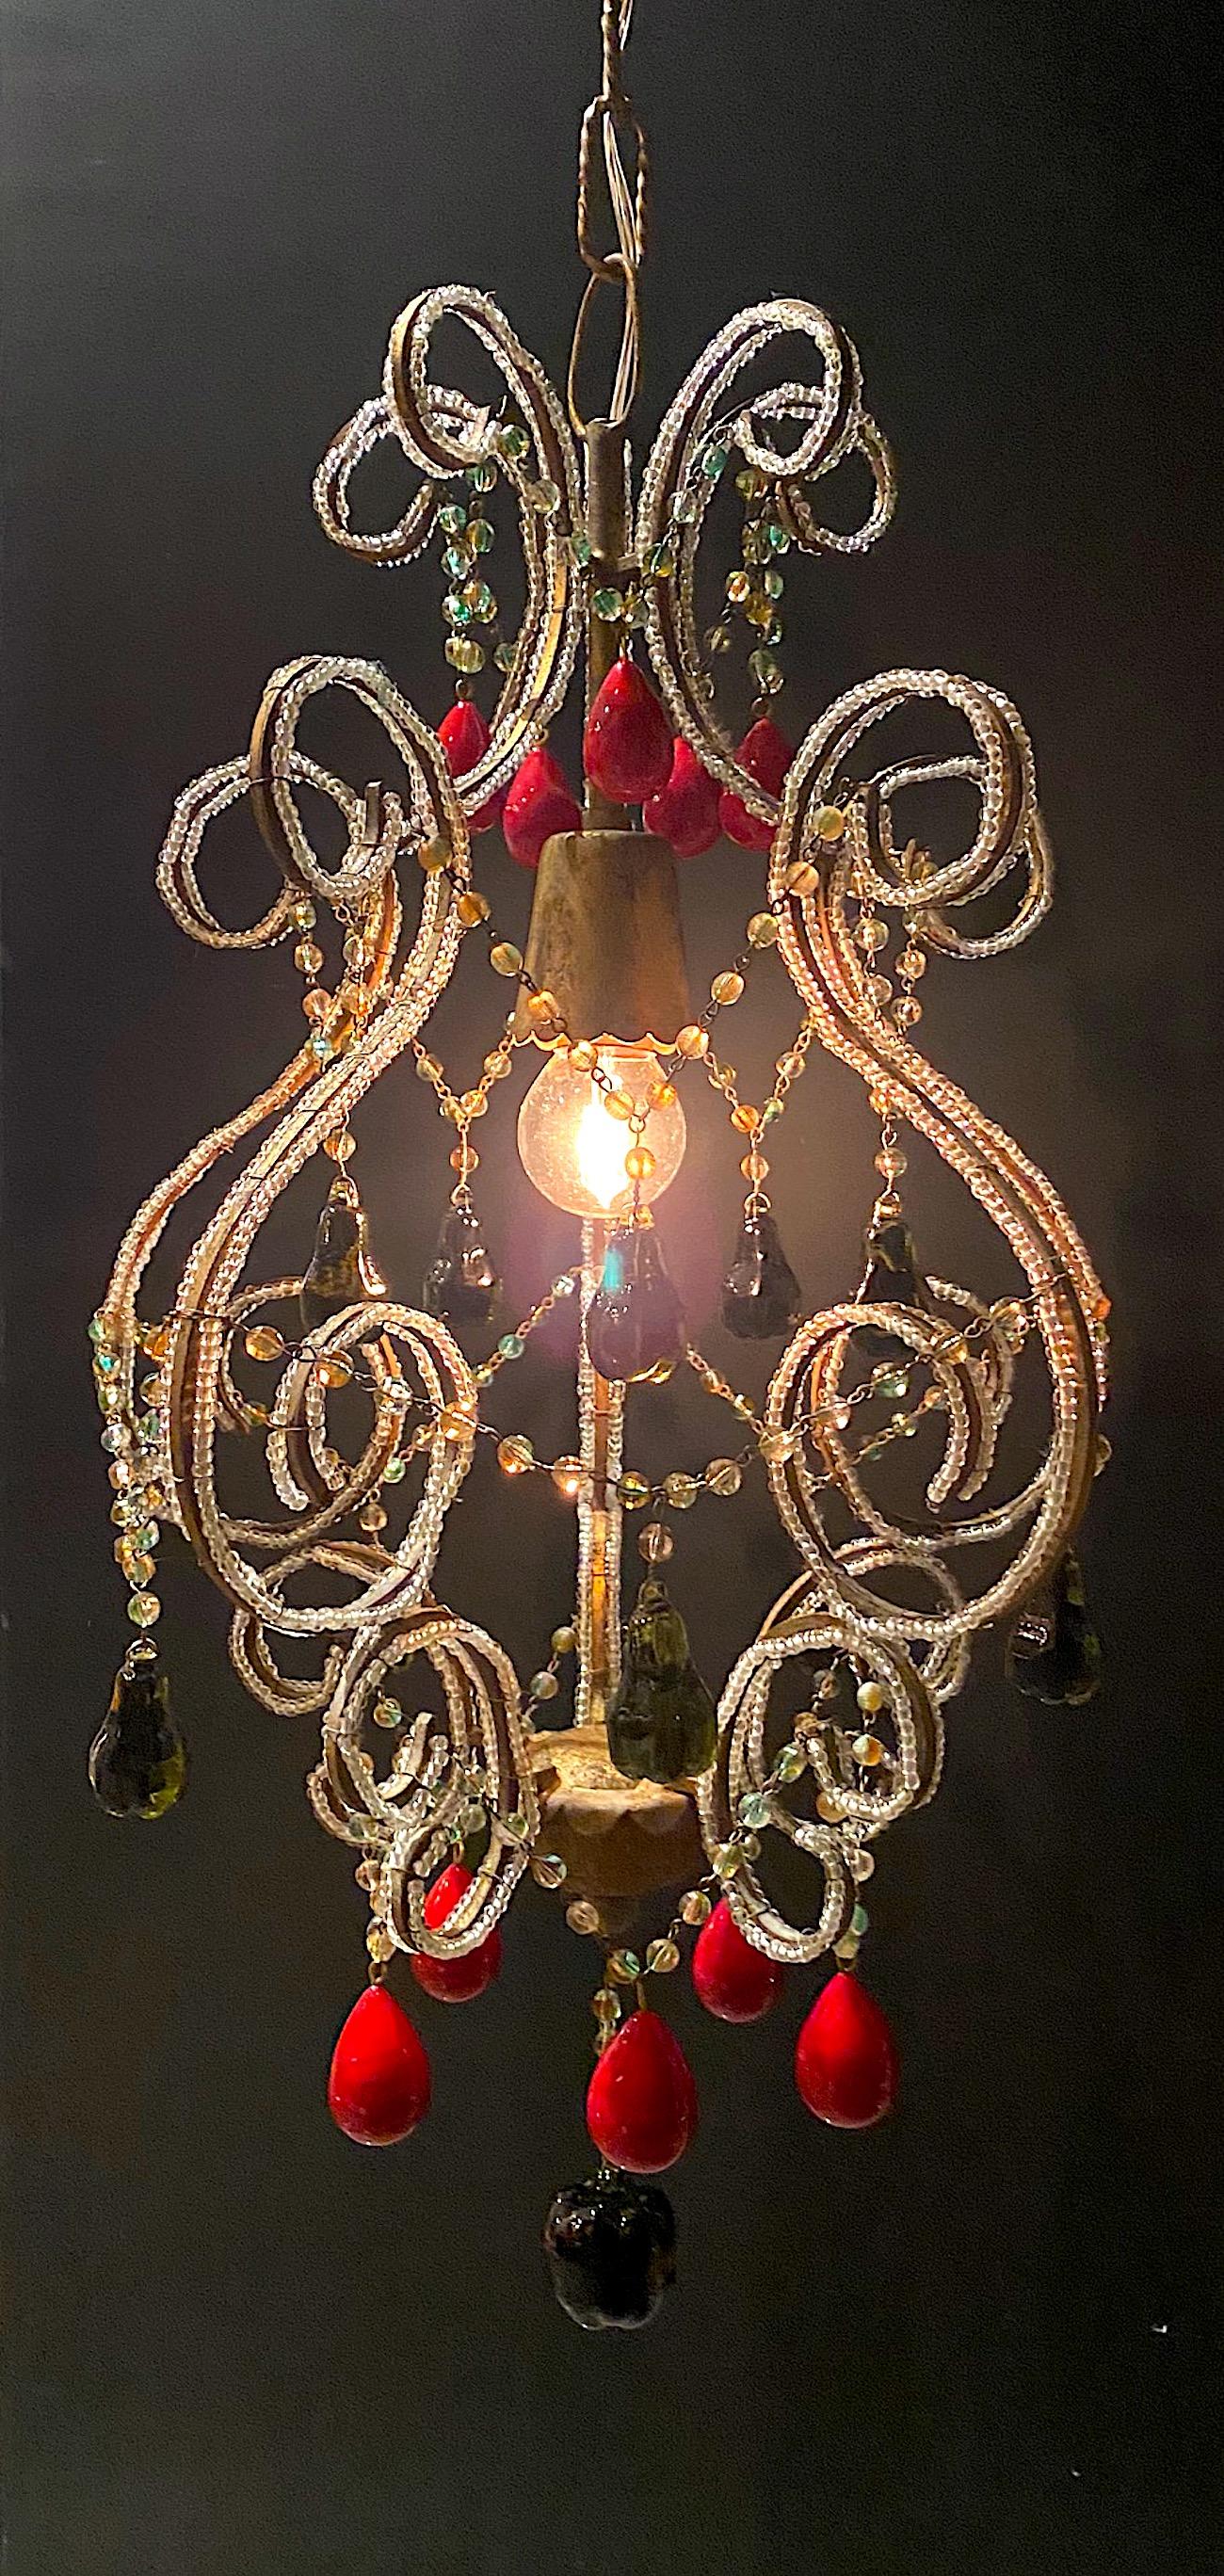 Lampe pendante italienne Hollywood Regency avec fruits et perles vénitiens, vers 1950. Le cadre en fer a une finition dorée peinte et est enveloppé de perles en verre clair faites à la main et polies. Les cinq supports de la lampe comportent quatre